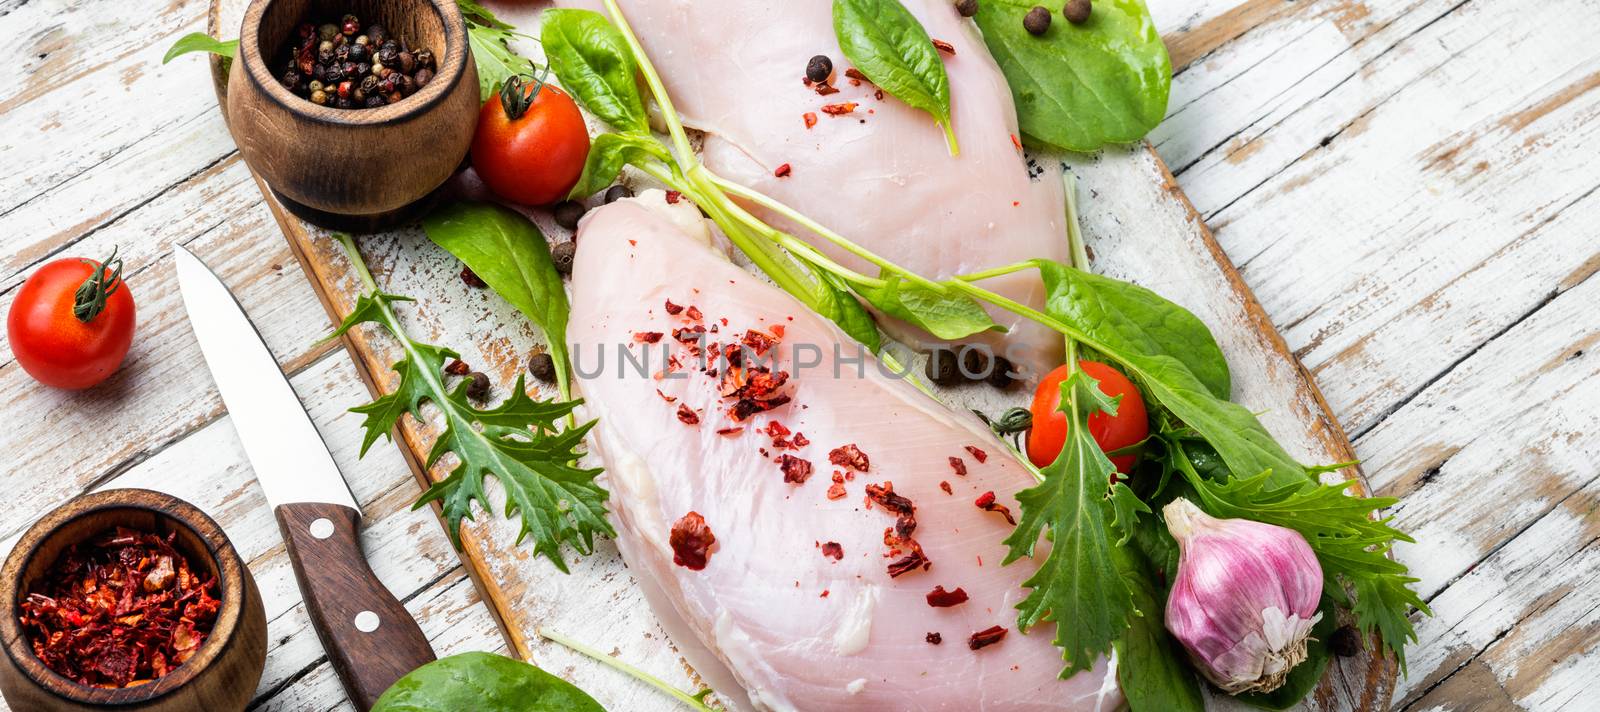 Fresh raw chicken on kitchen cutting board